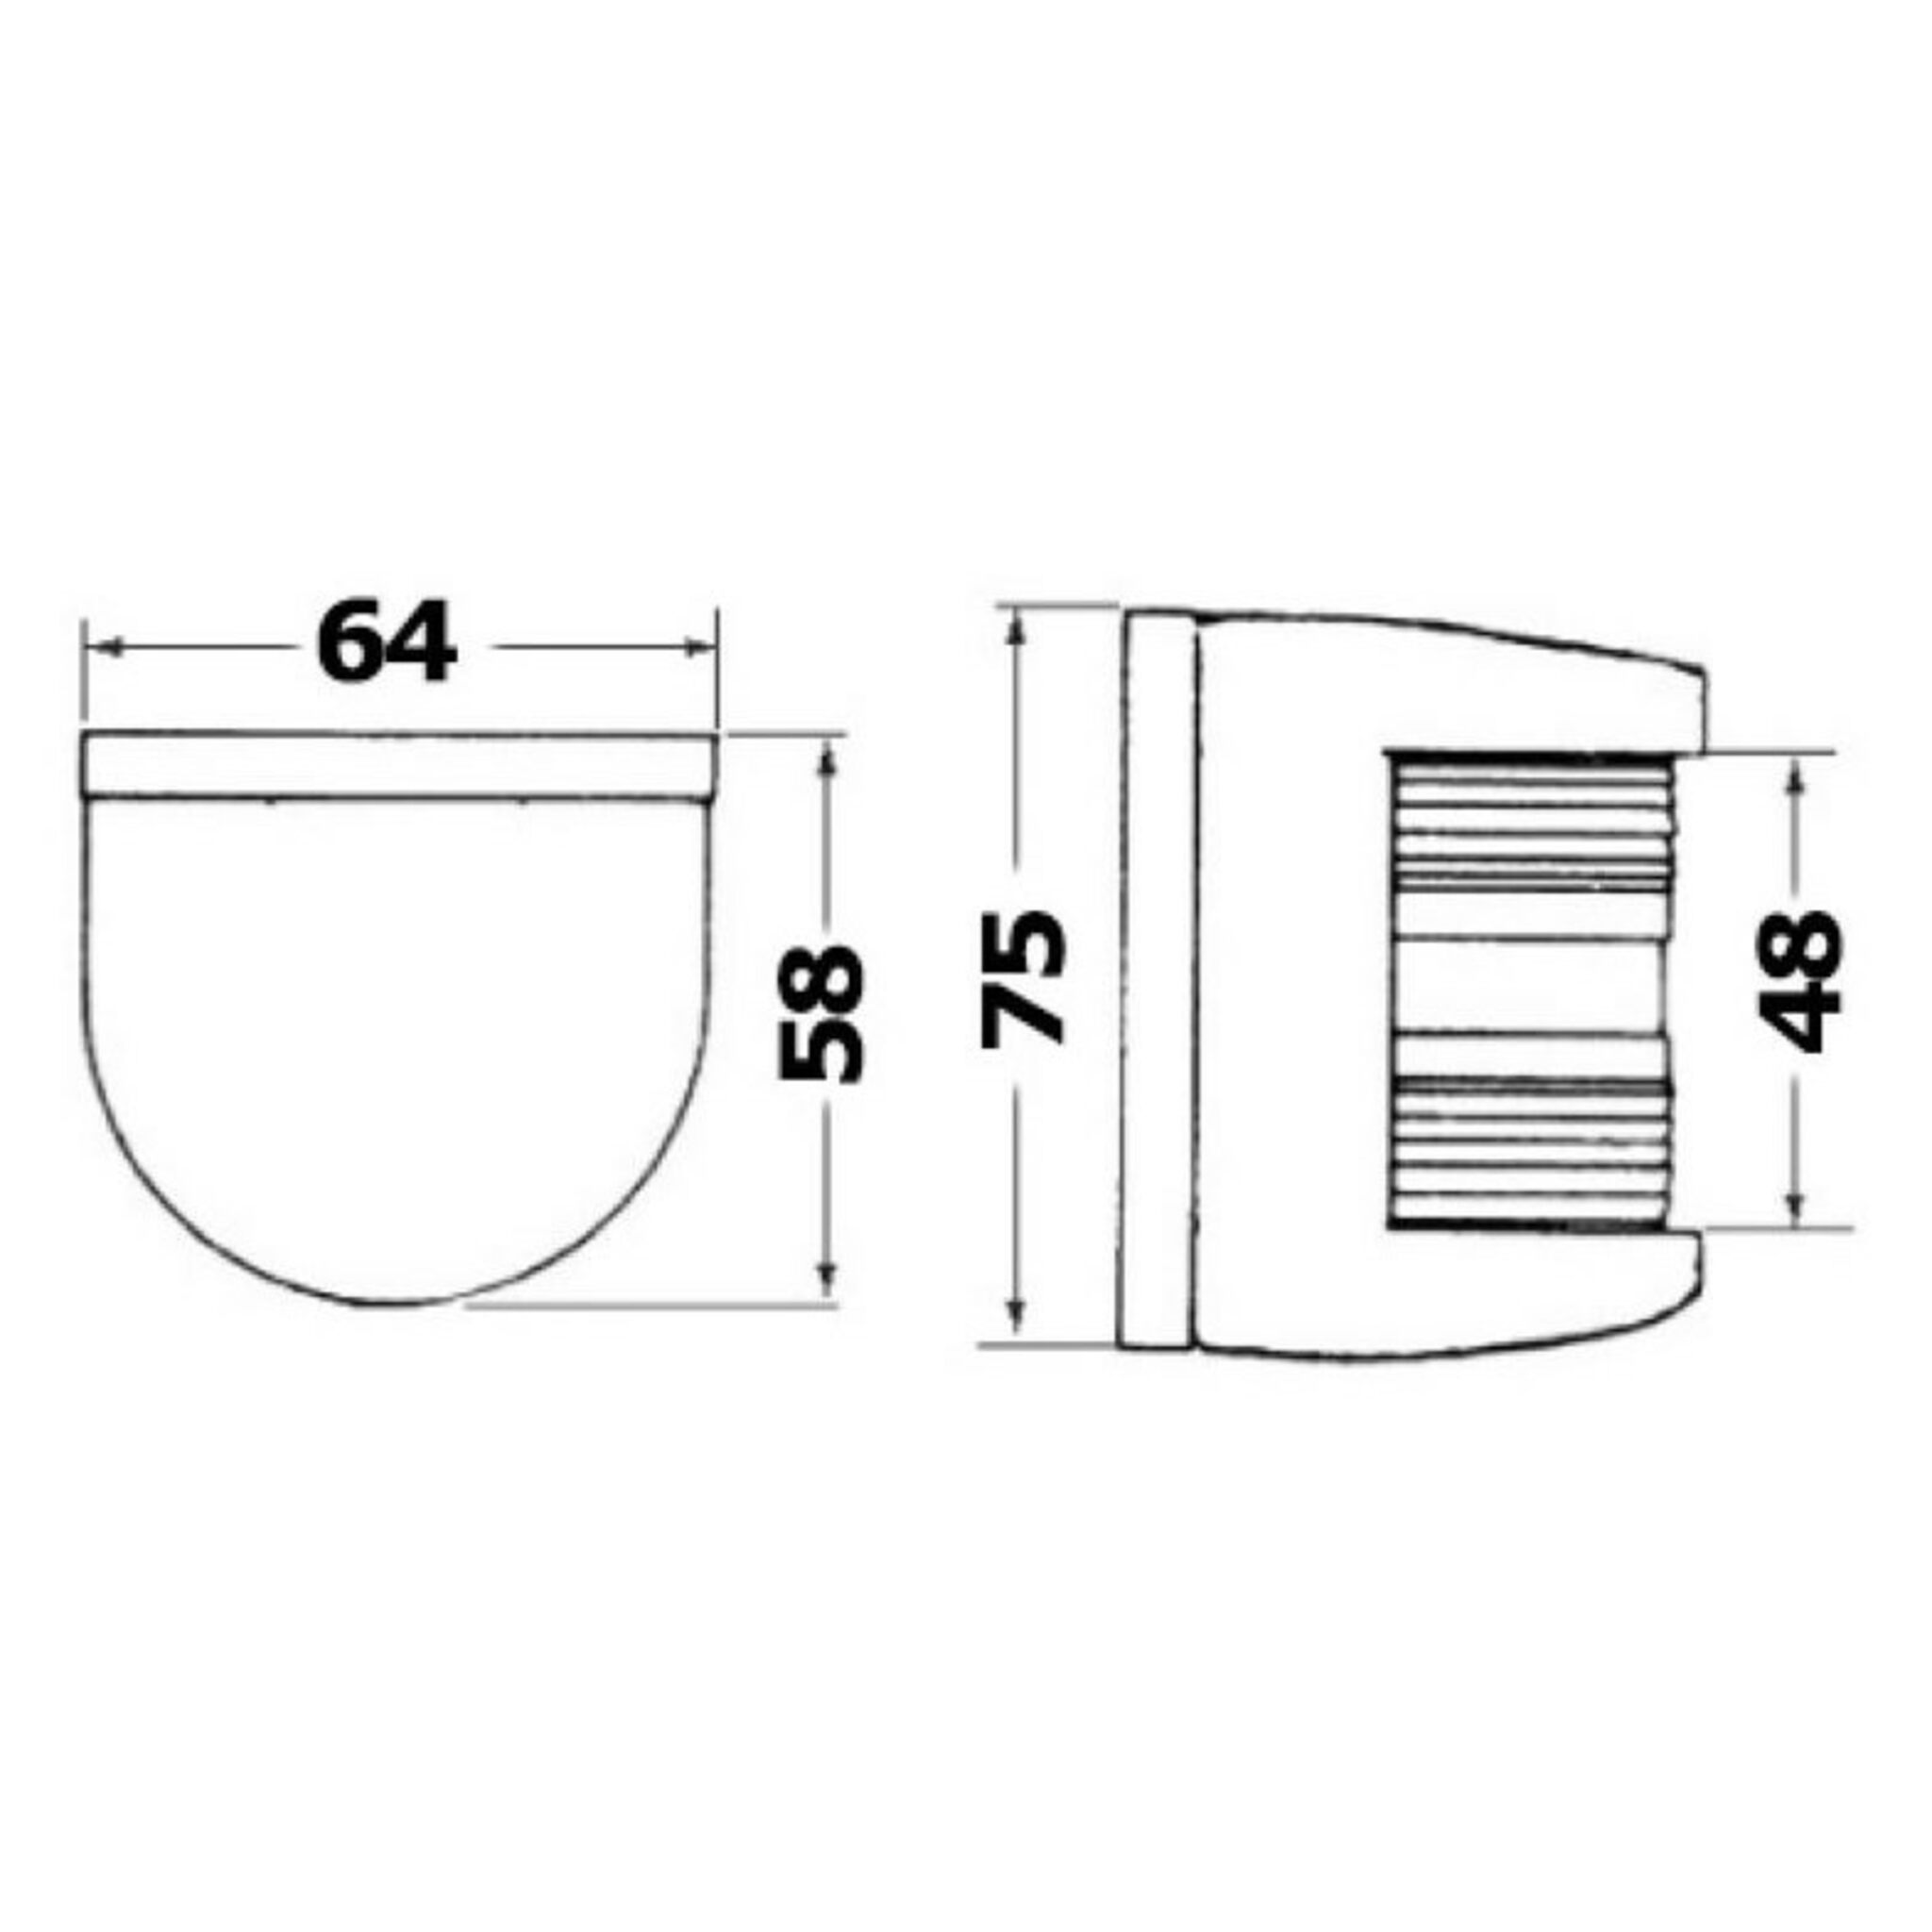 Soffittenlampe für Innenleuchten,  37 mm, 12 V/10 W, 4 Stück